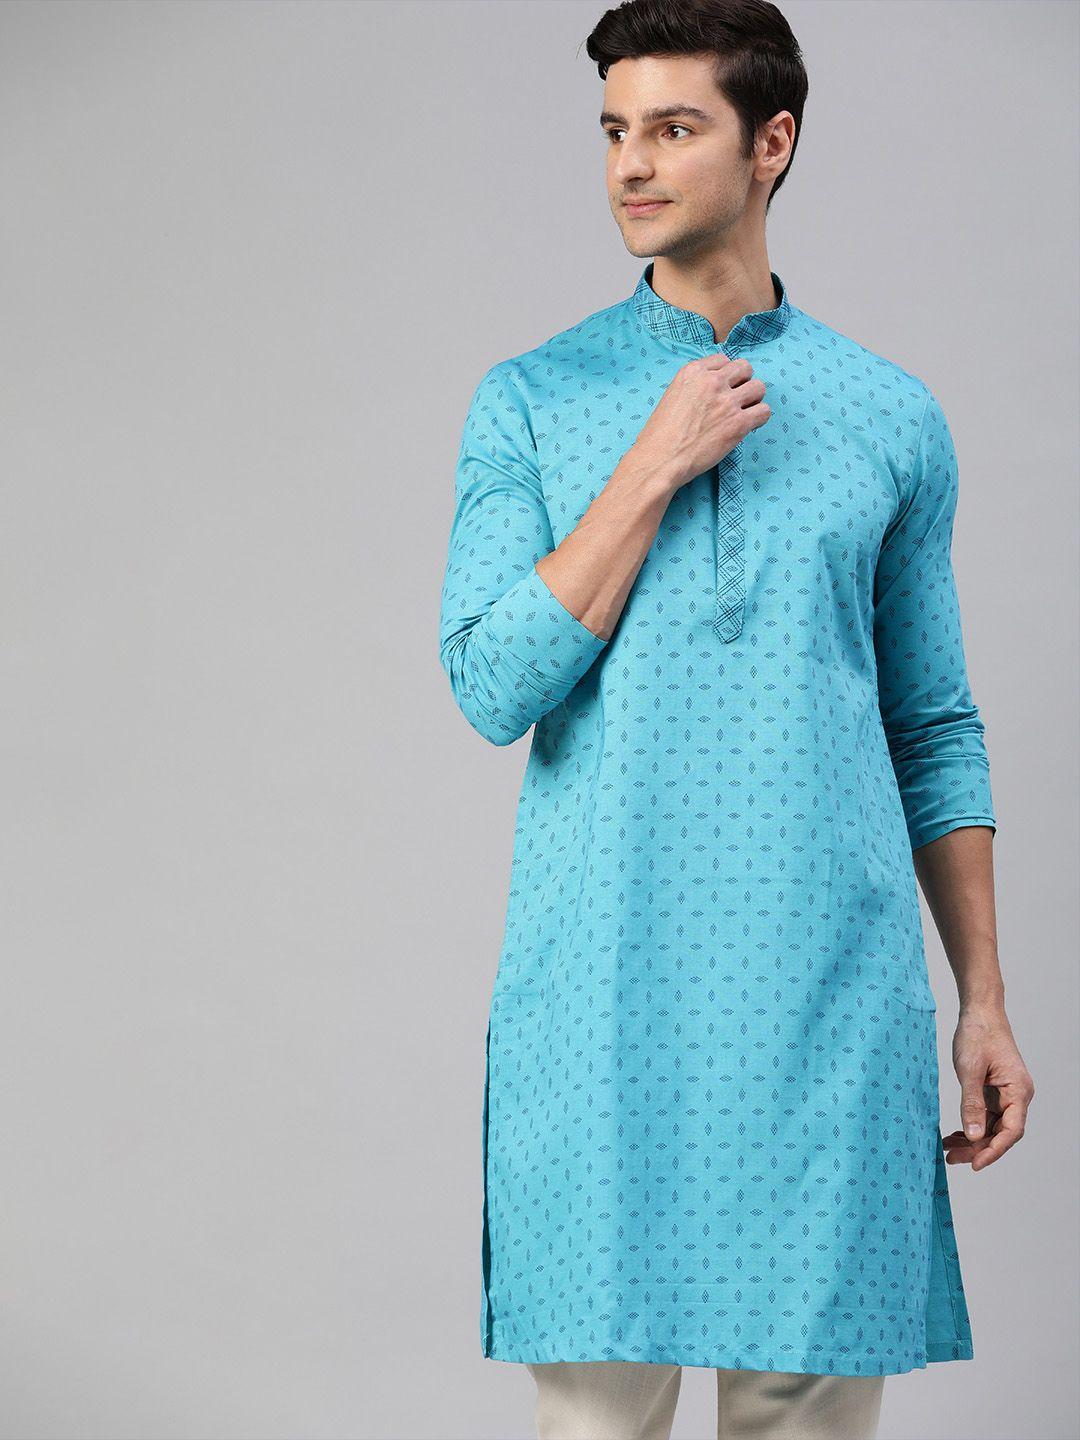 manthan men turquoise blue geometric printed kurta